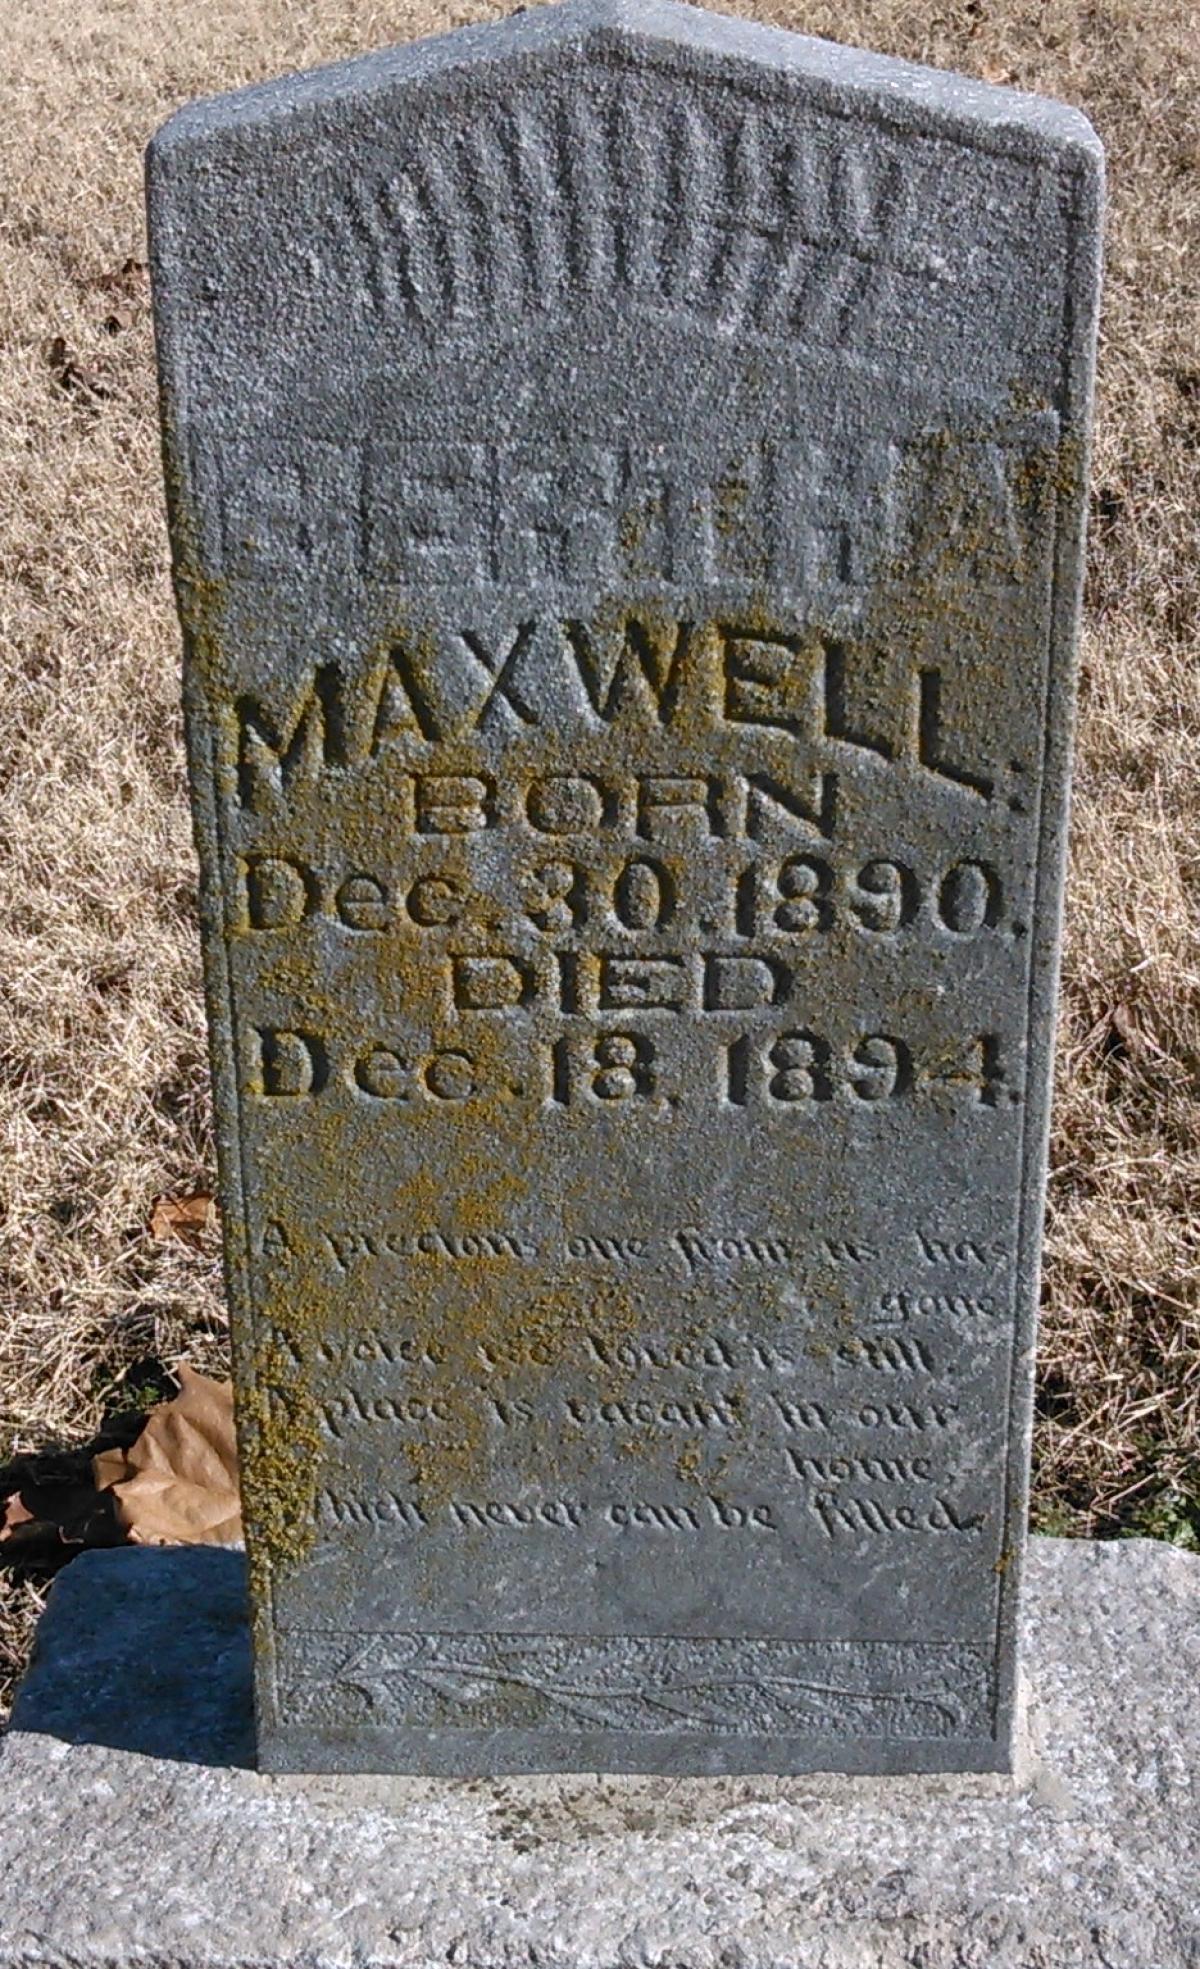 OK, Grove, Buzzard Cemetery, Maxwell, Bertha Headstone